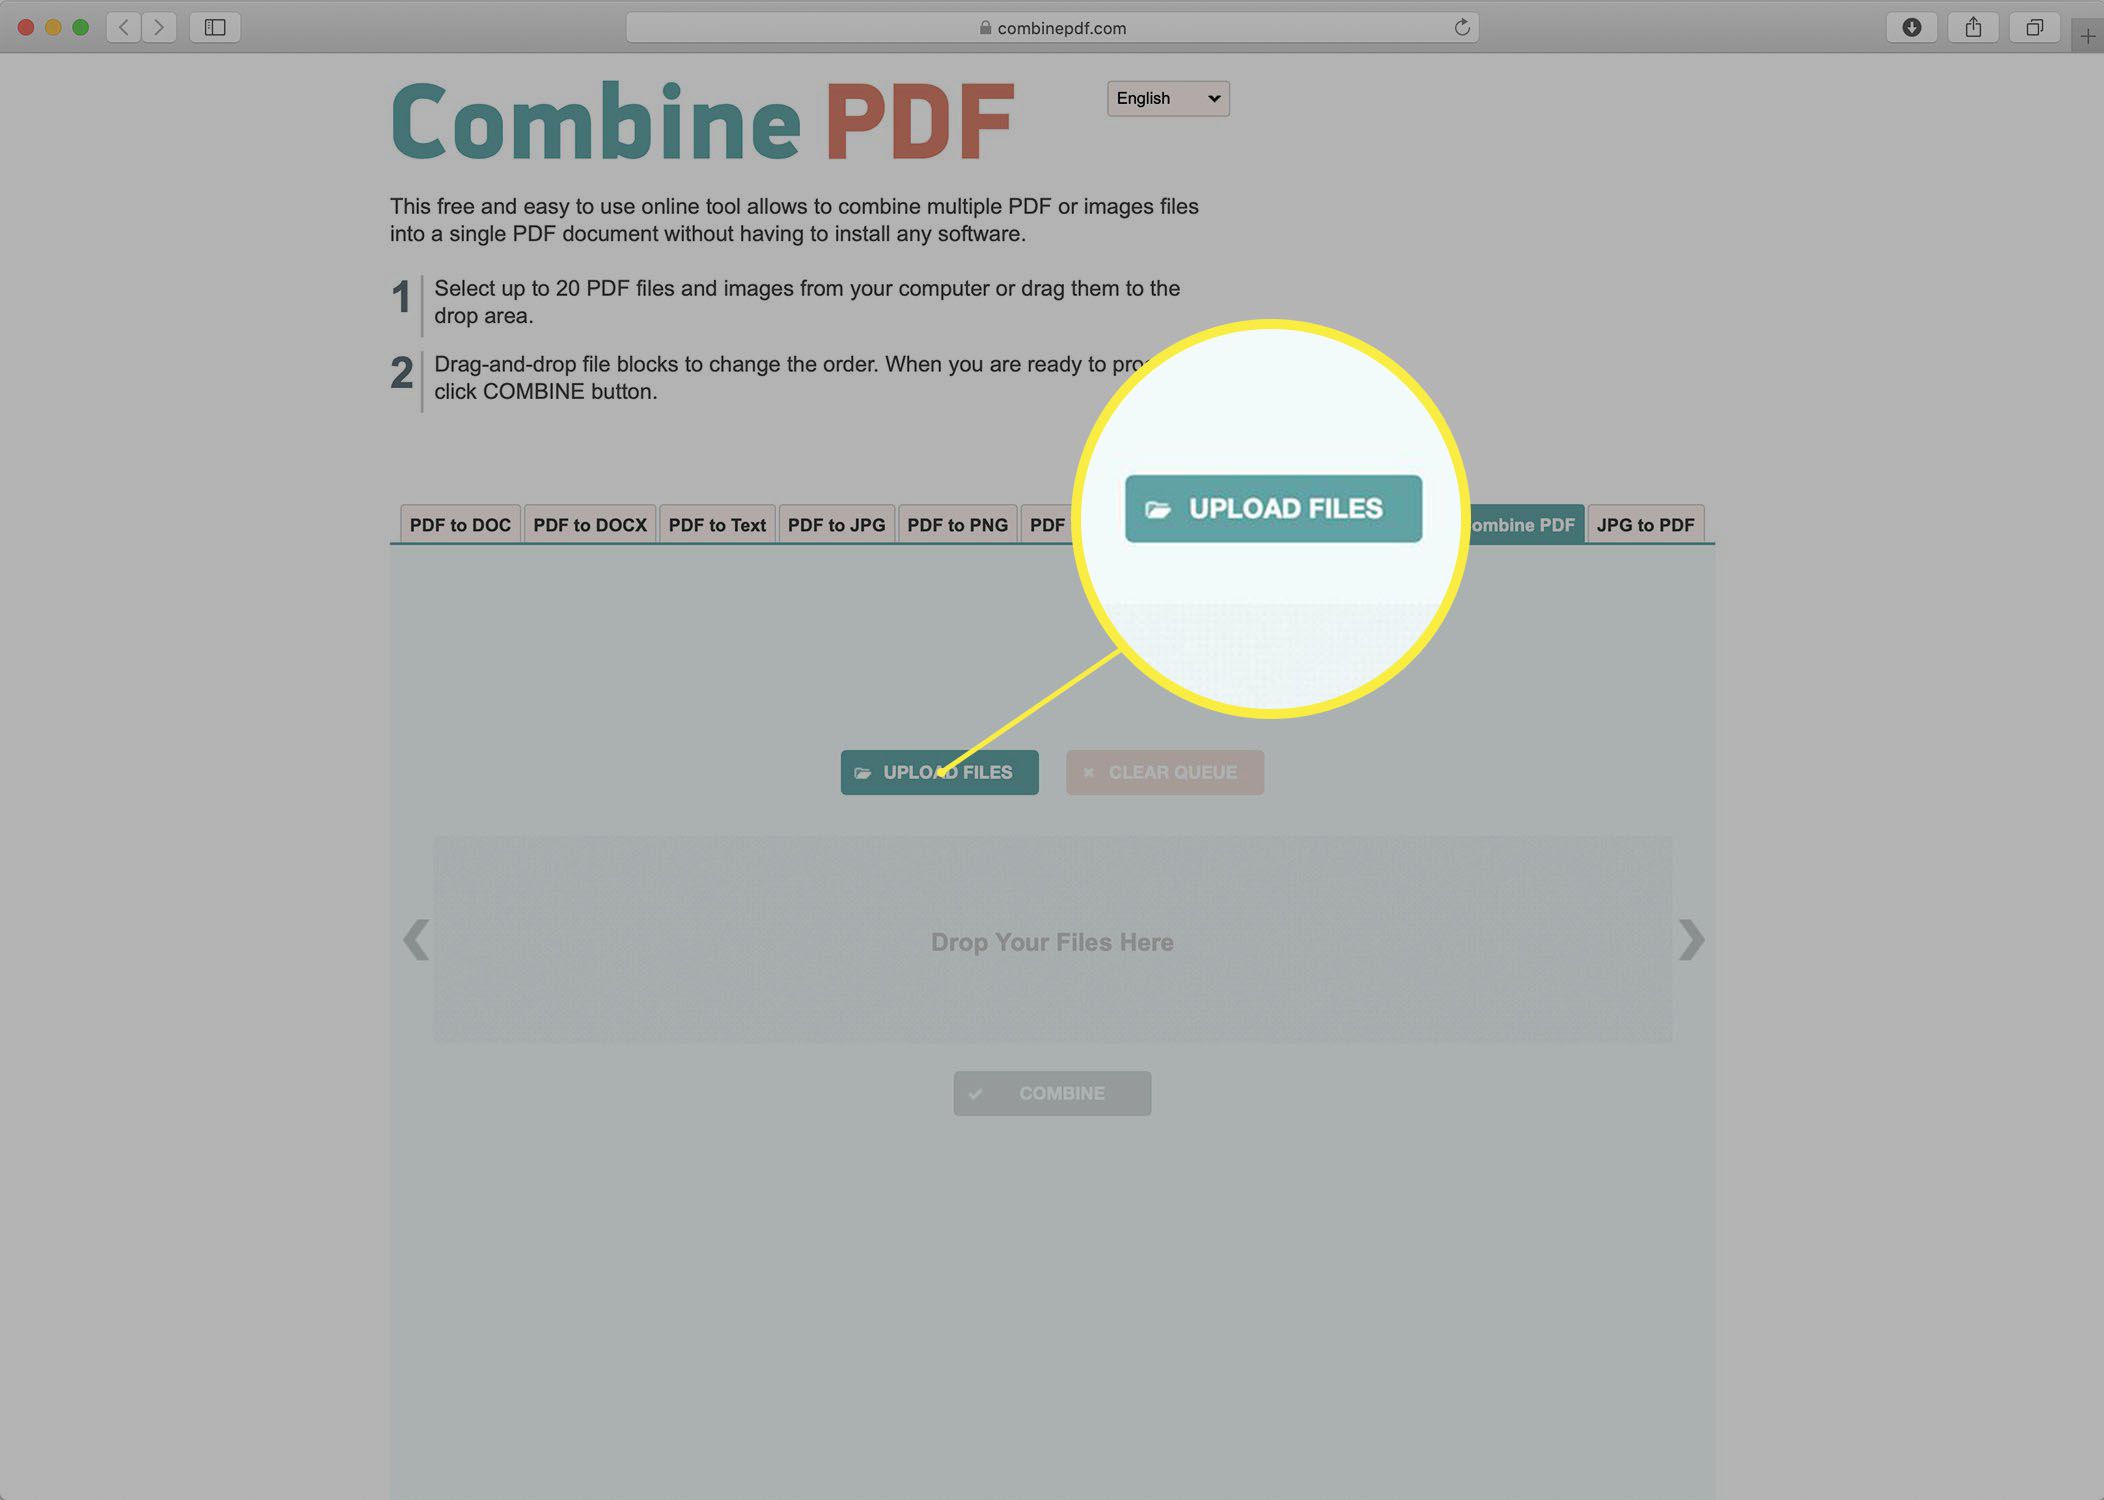 Captura de tela do site Combine PDF.